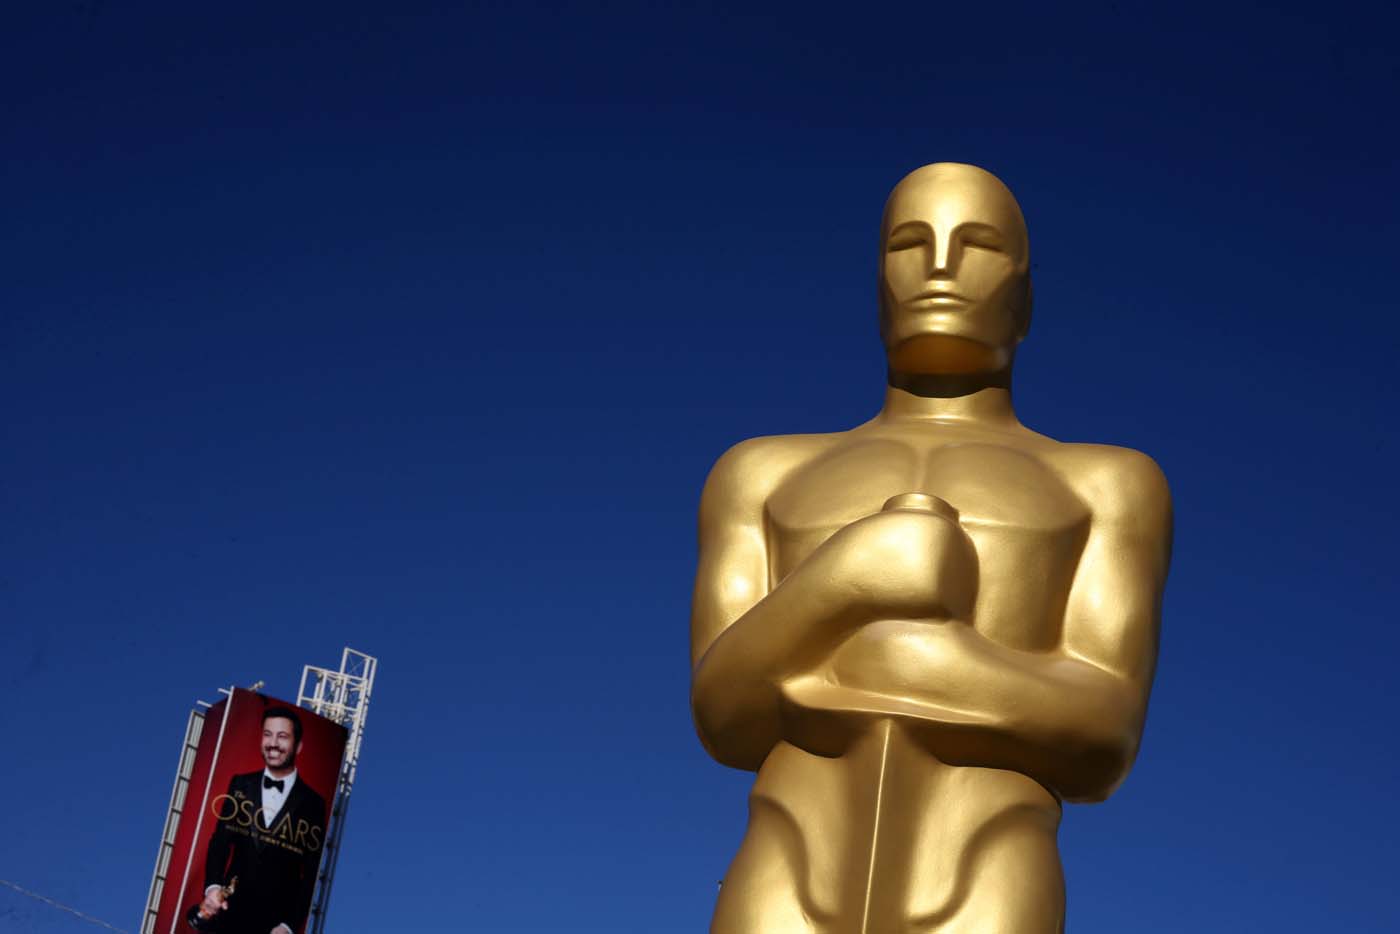 Directores de películas nominadas al Óscar en lengua extranjera denuncian “fanatismo”